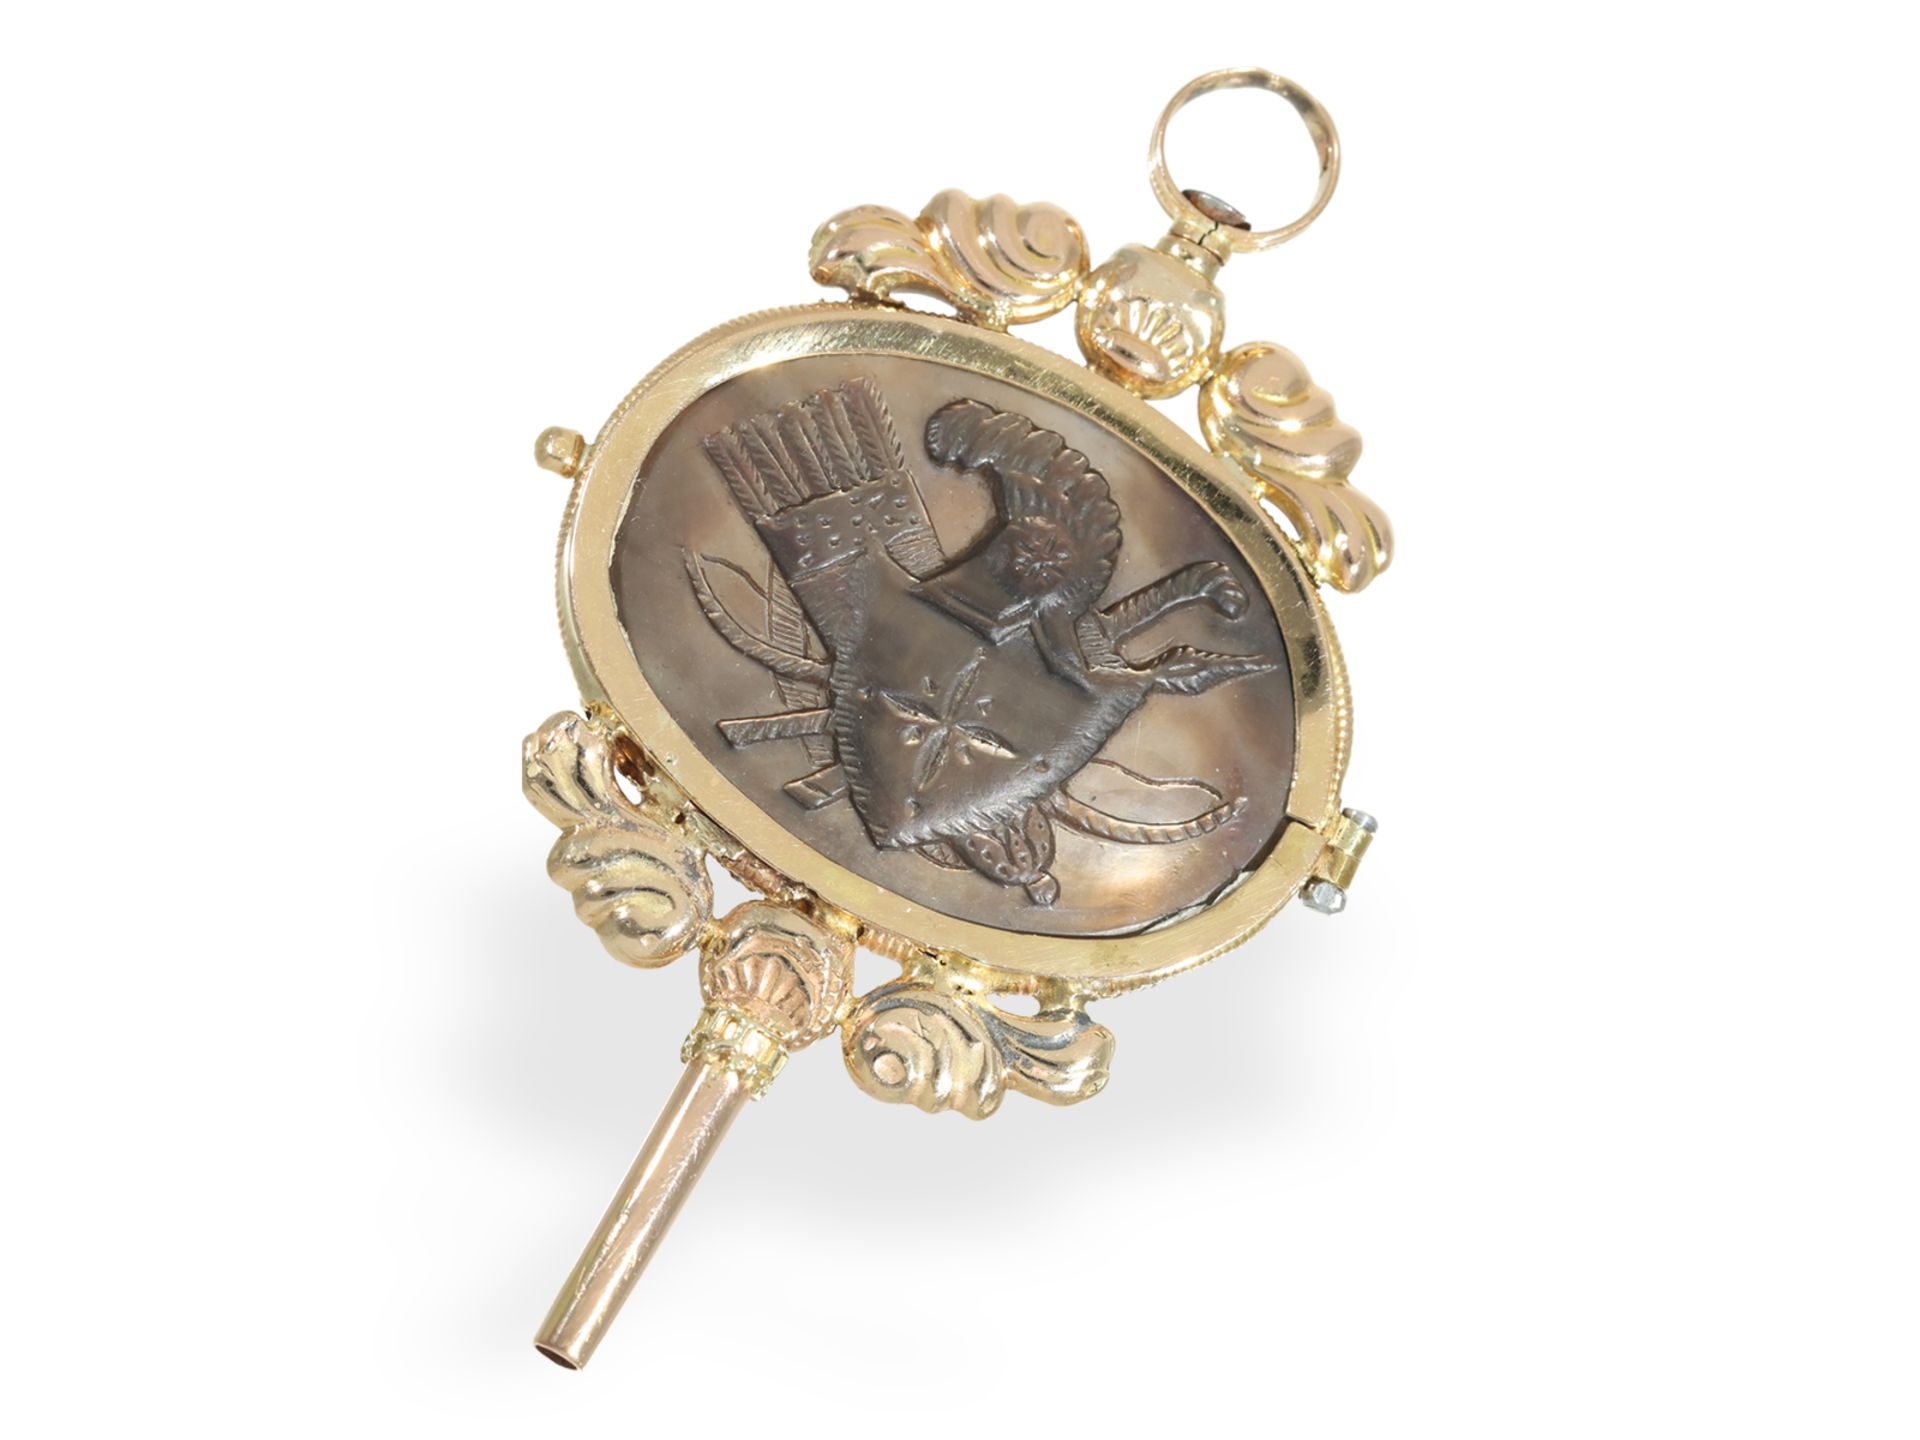 Uhrenschlüssel: sehr seltener Prunkschlüssel mit 2 Perlmutt-Kameen, Gold, um 1820 - Bild 2 aus 2